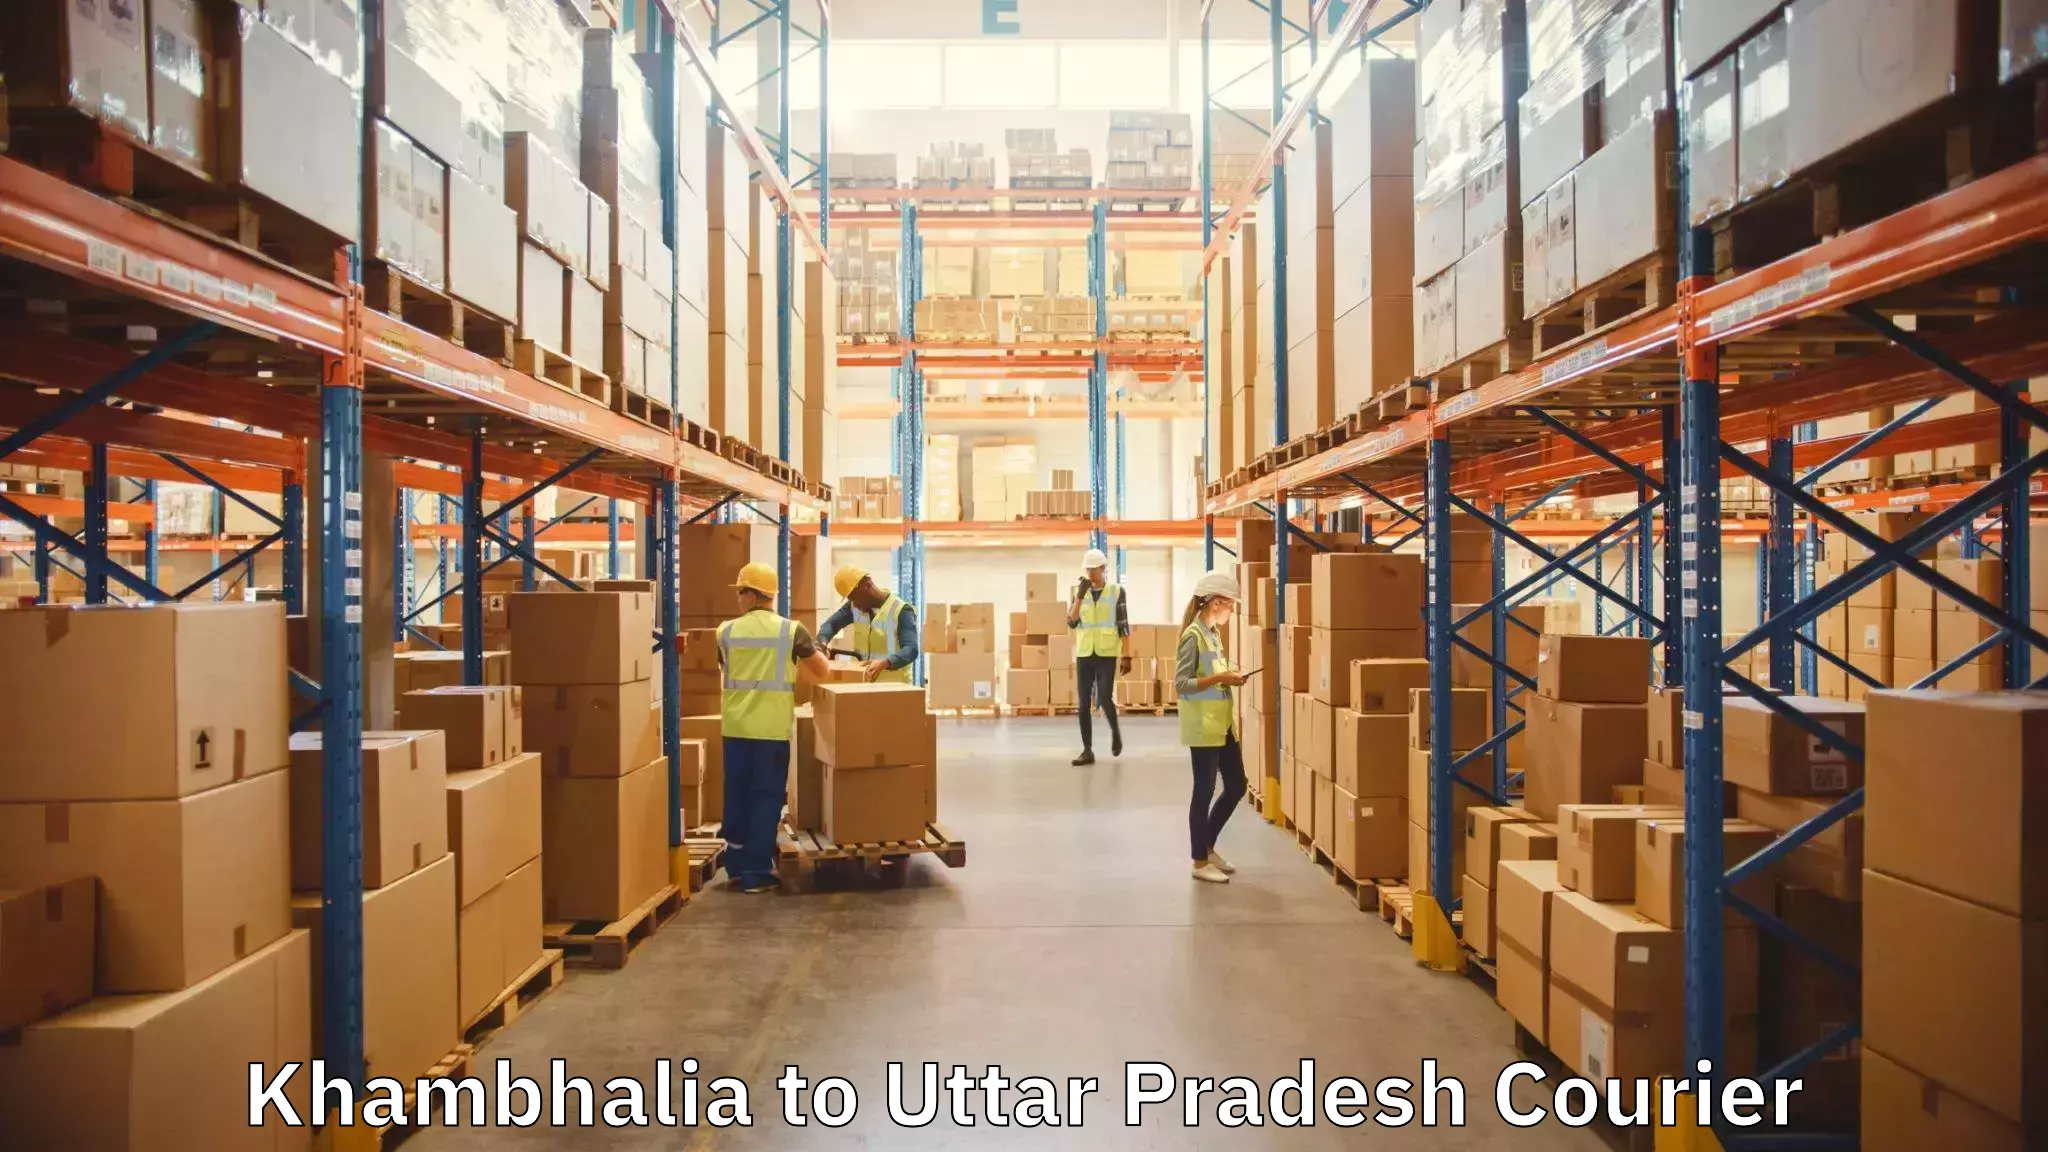 Moving and packing experts Khambhalia to Kanth